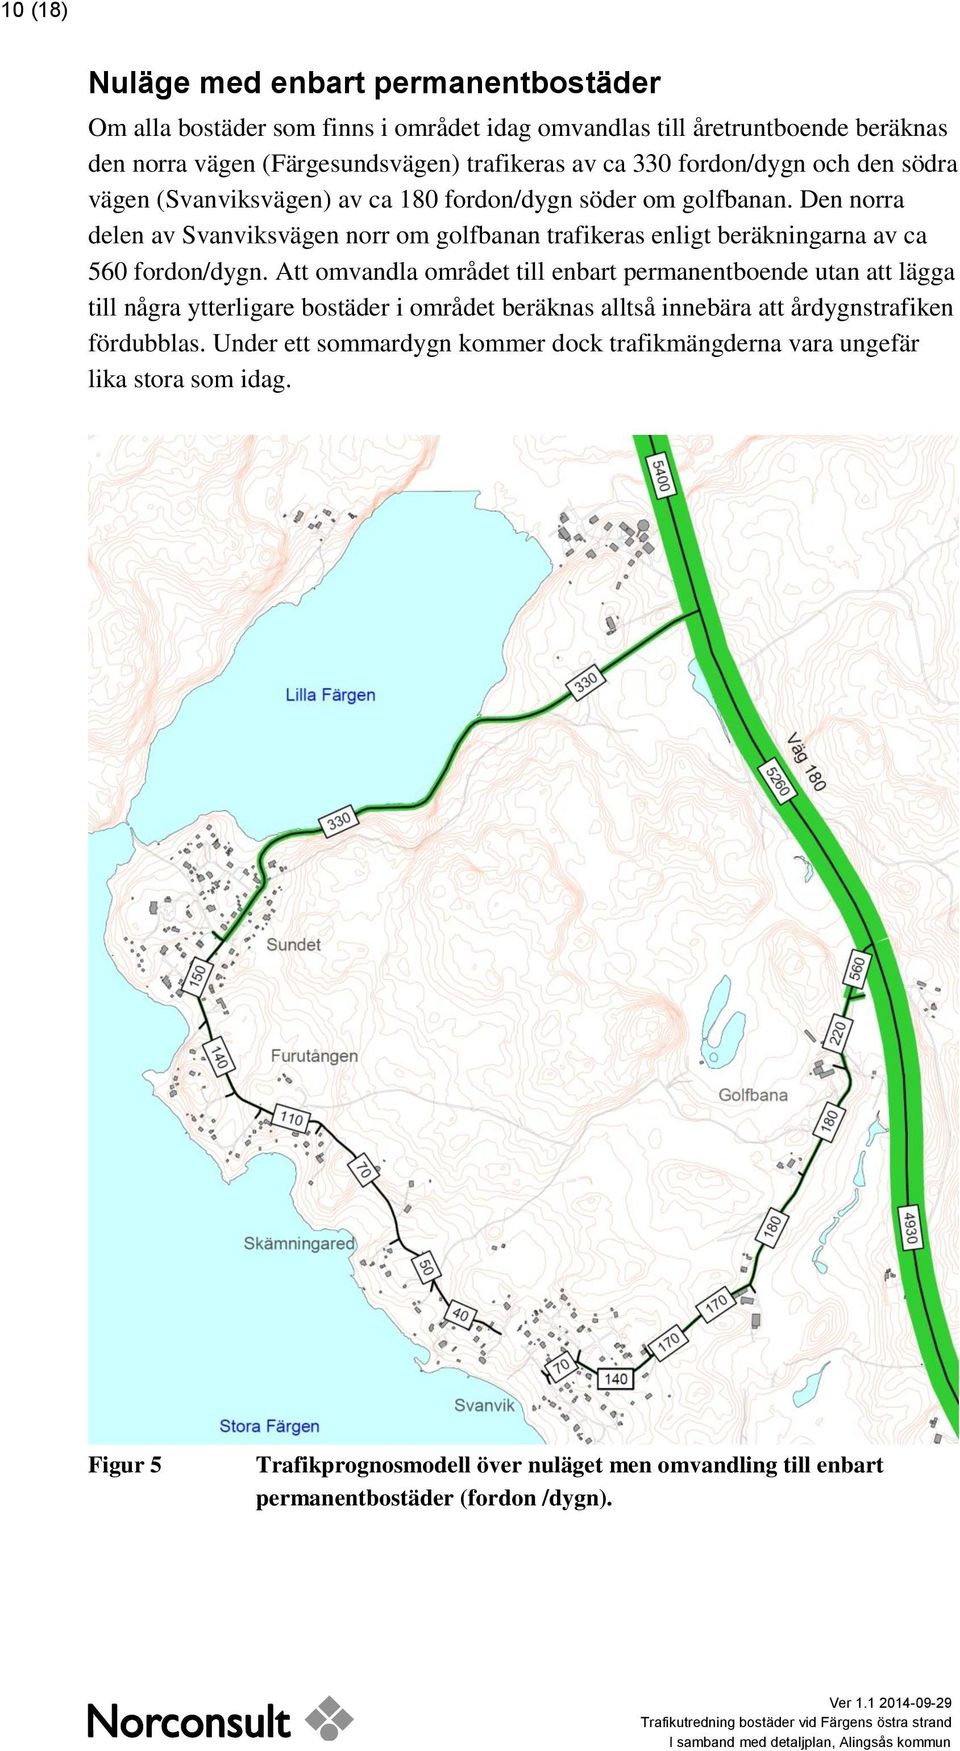 Den norra delen av Svanviksvägen norr om golfbanan trafikeras enligt beräkningarna av ca 560 fordon/dygn.